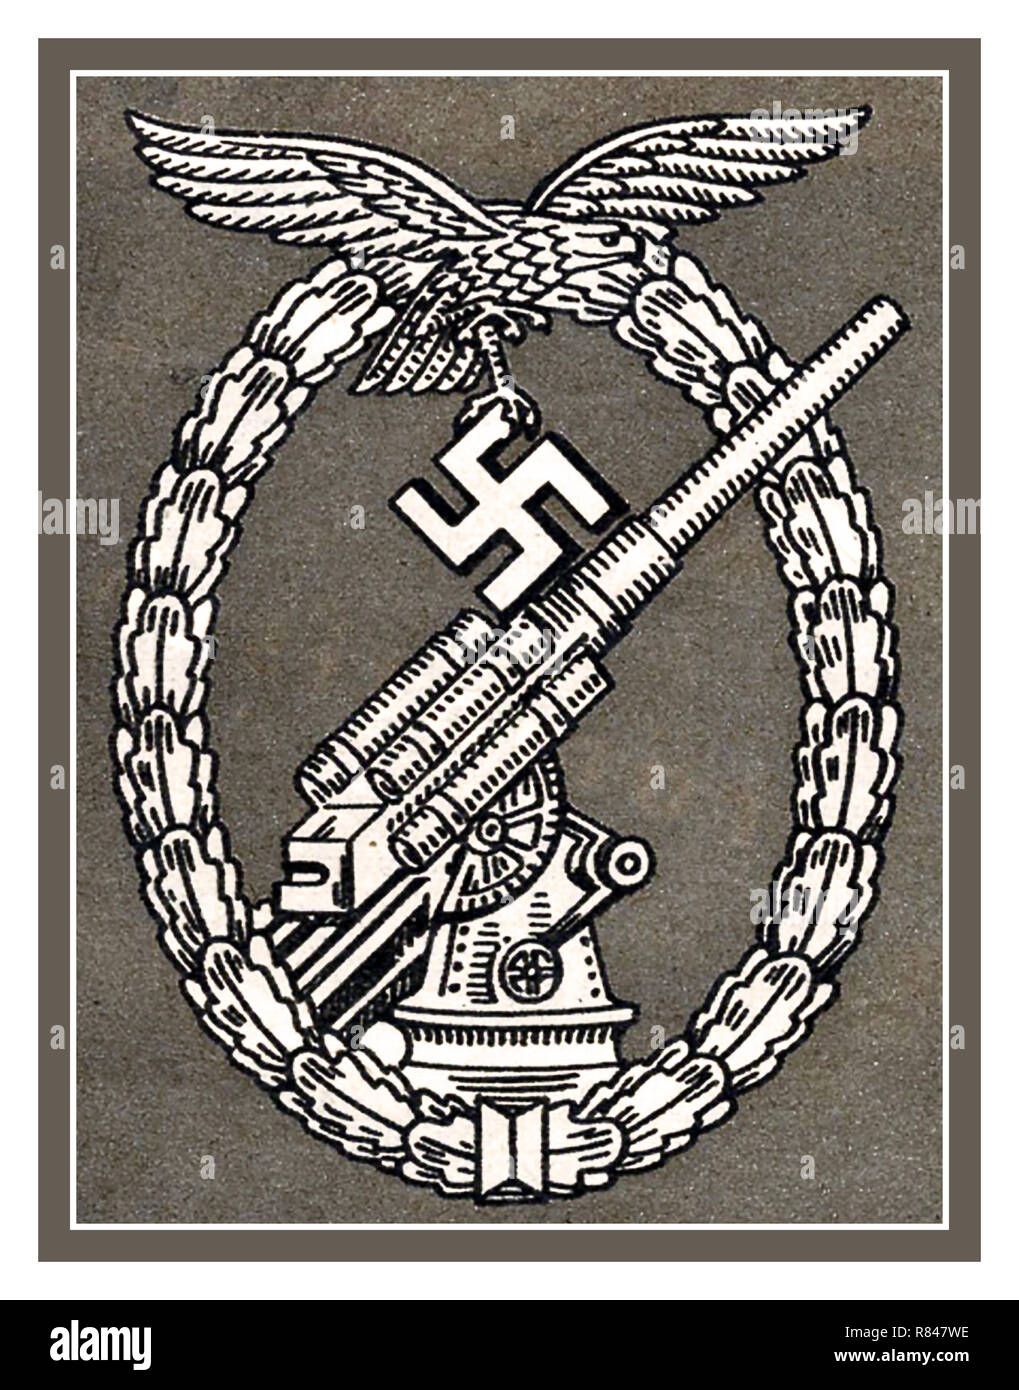 WW2 1940's La battaglia Swastika e badge Eagle award per la Germania nazista antenna della Wehrmacht Flak artiglieri, difendere e sparare contro alleata dei caccia bombardiere e aeromobili Foto Stock